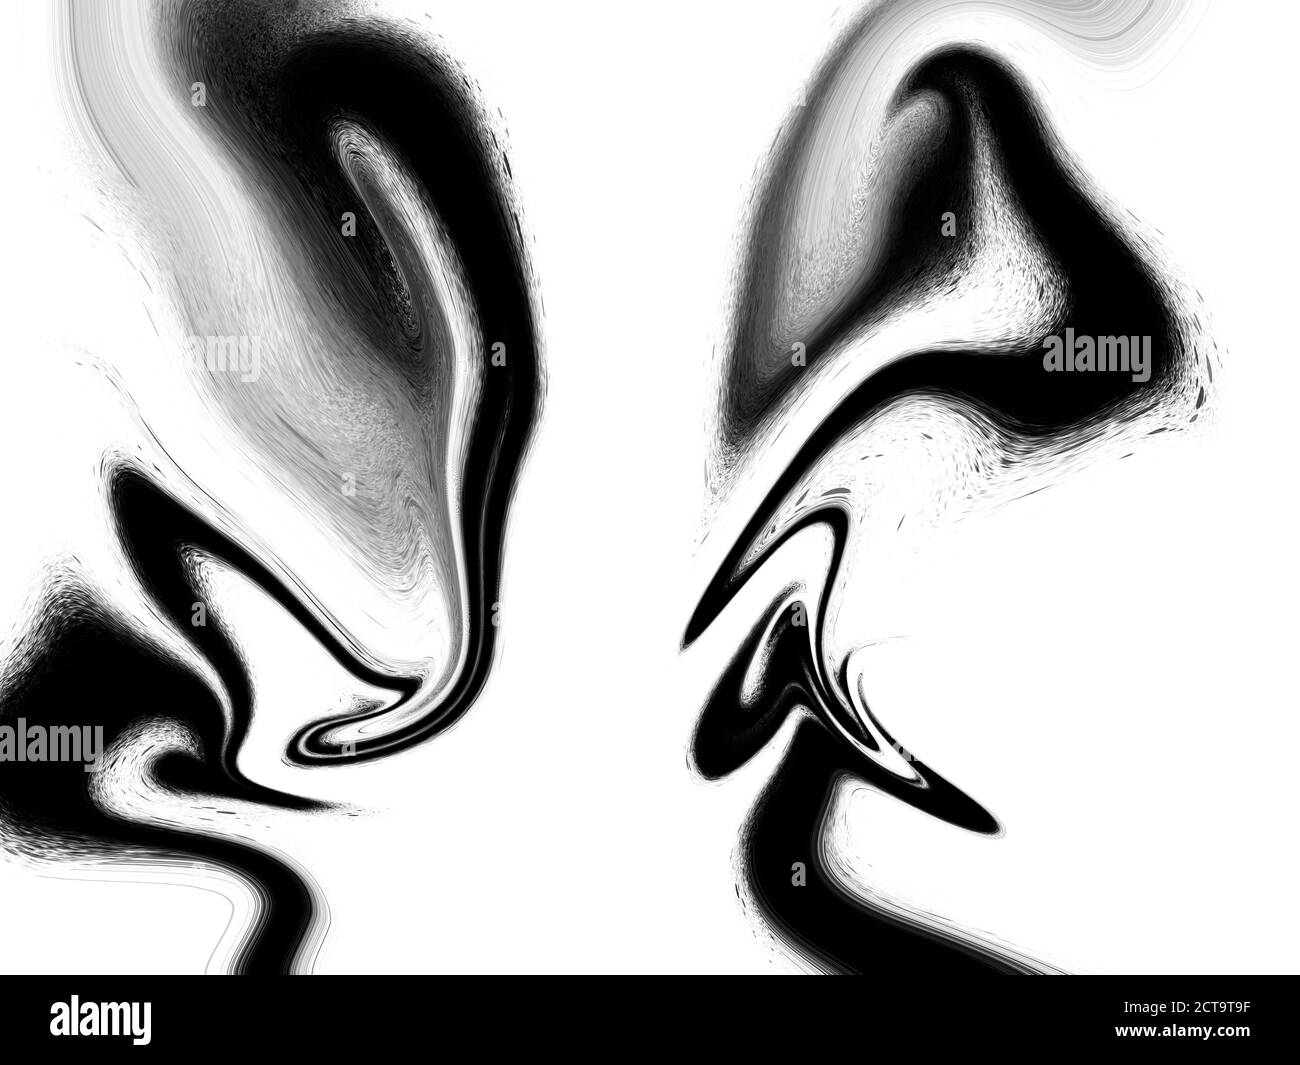 Abstrakt schwarz und weiß Marmor-wie Tinte Zeichnung Hintergrund. Hochauflösende jpg-Datei, perfekt für Ihre Projekte. Stockfoto